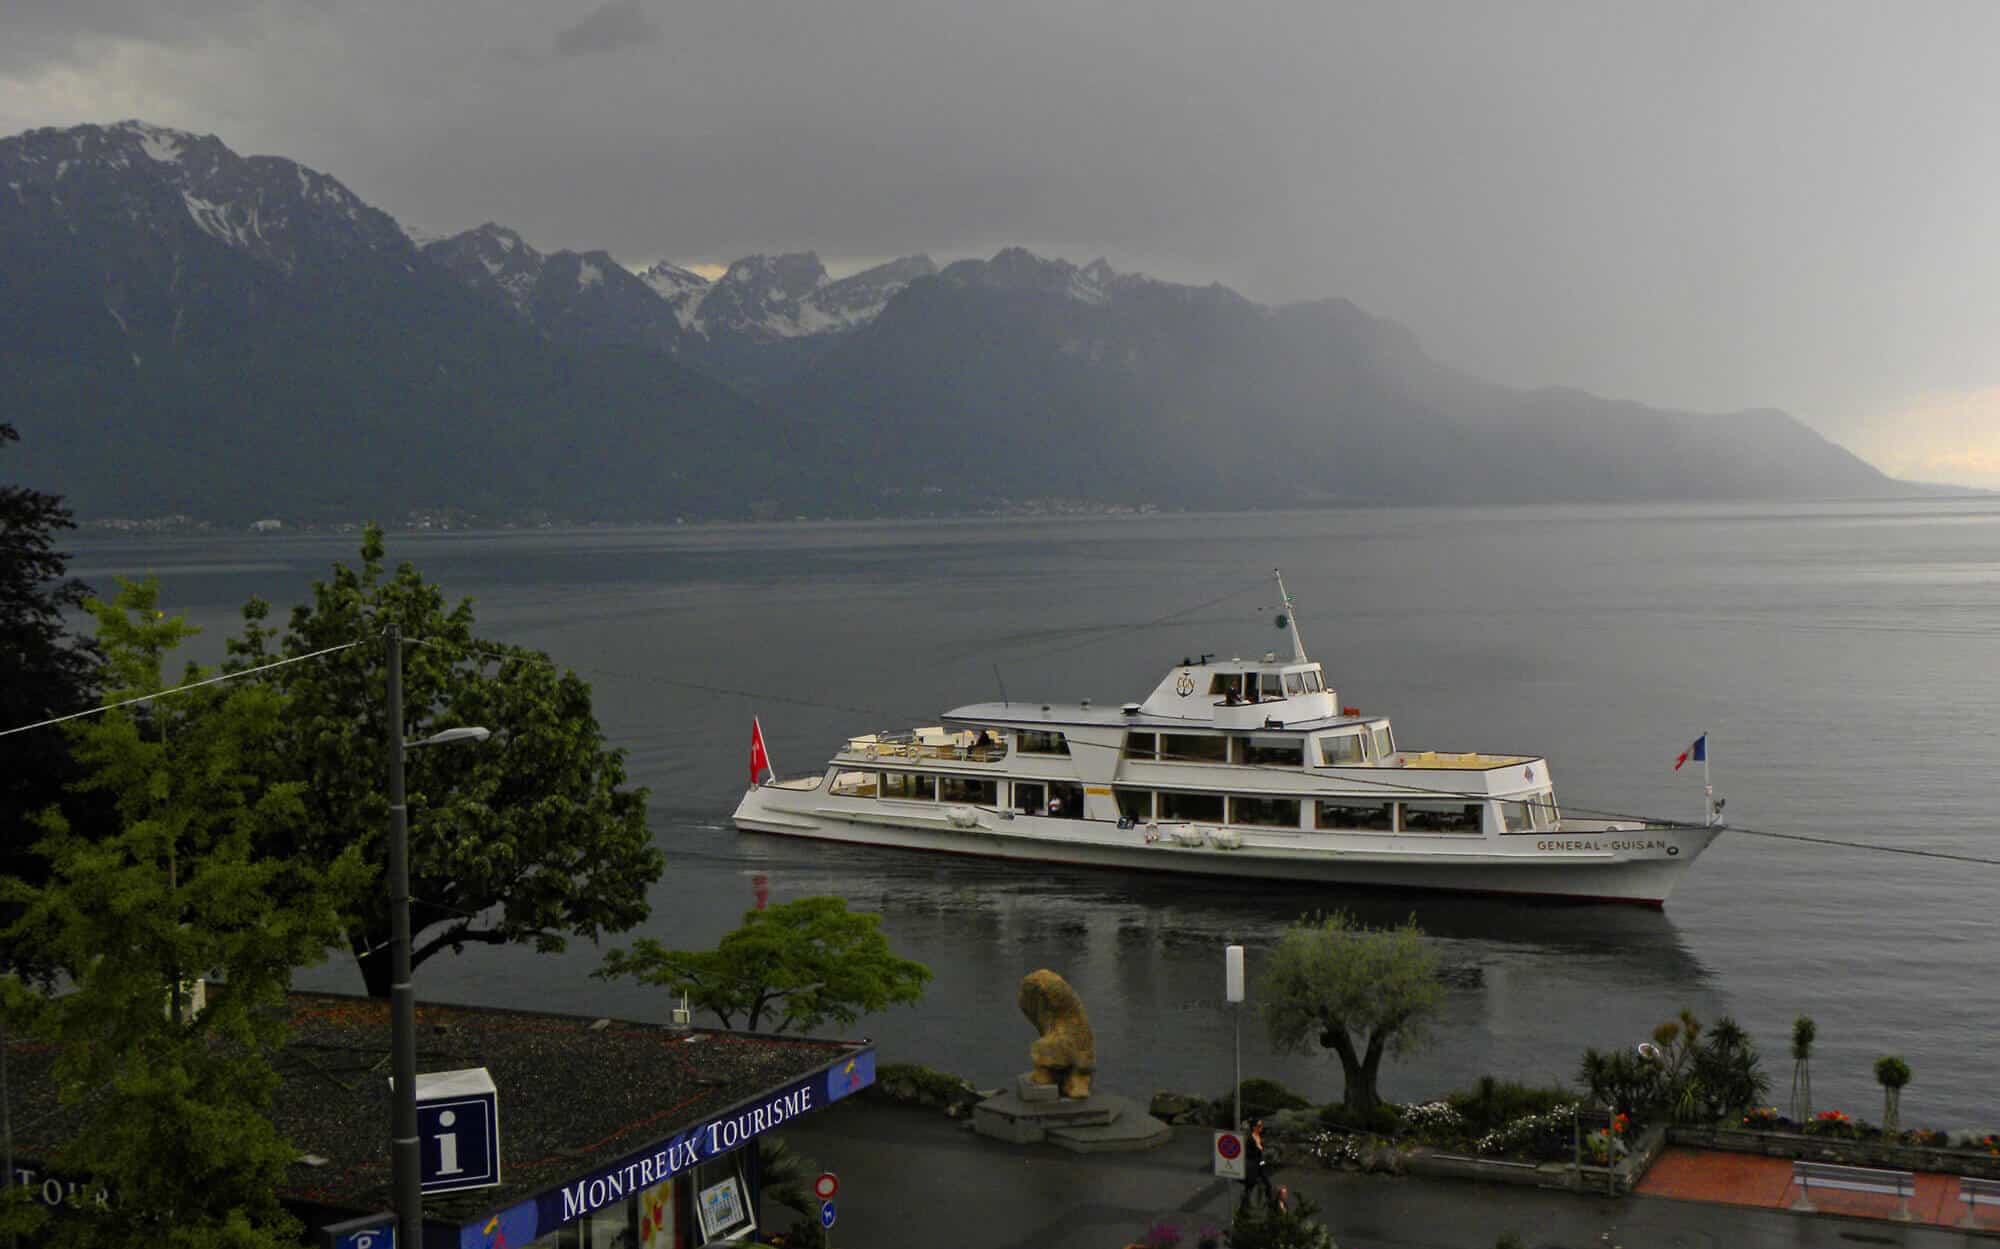 Montreux (Switzerland) and photos of Lake Geneva